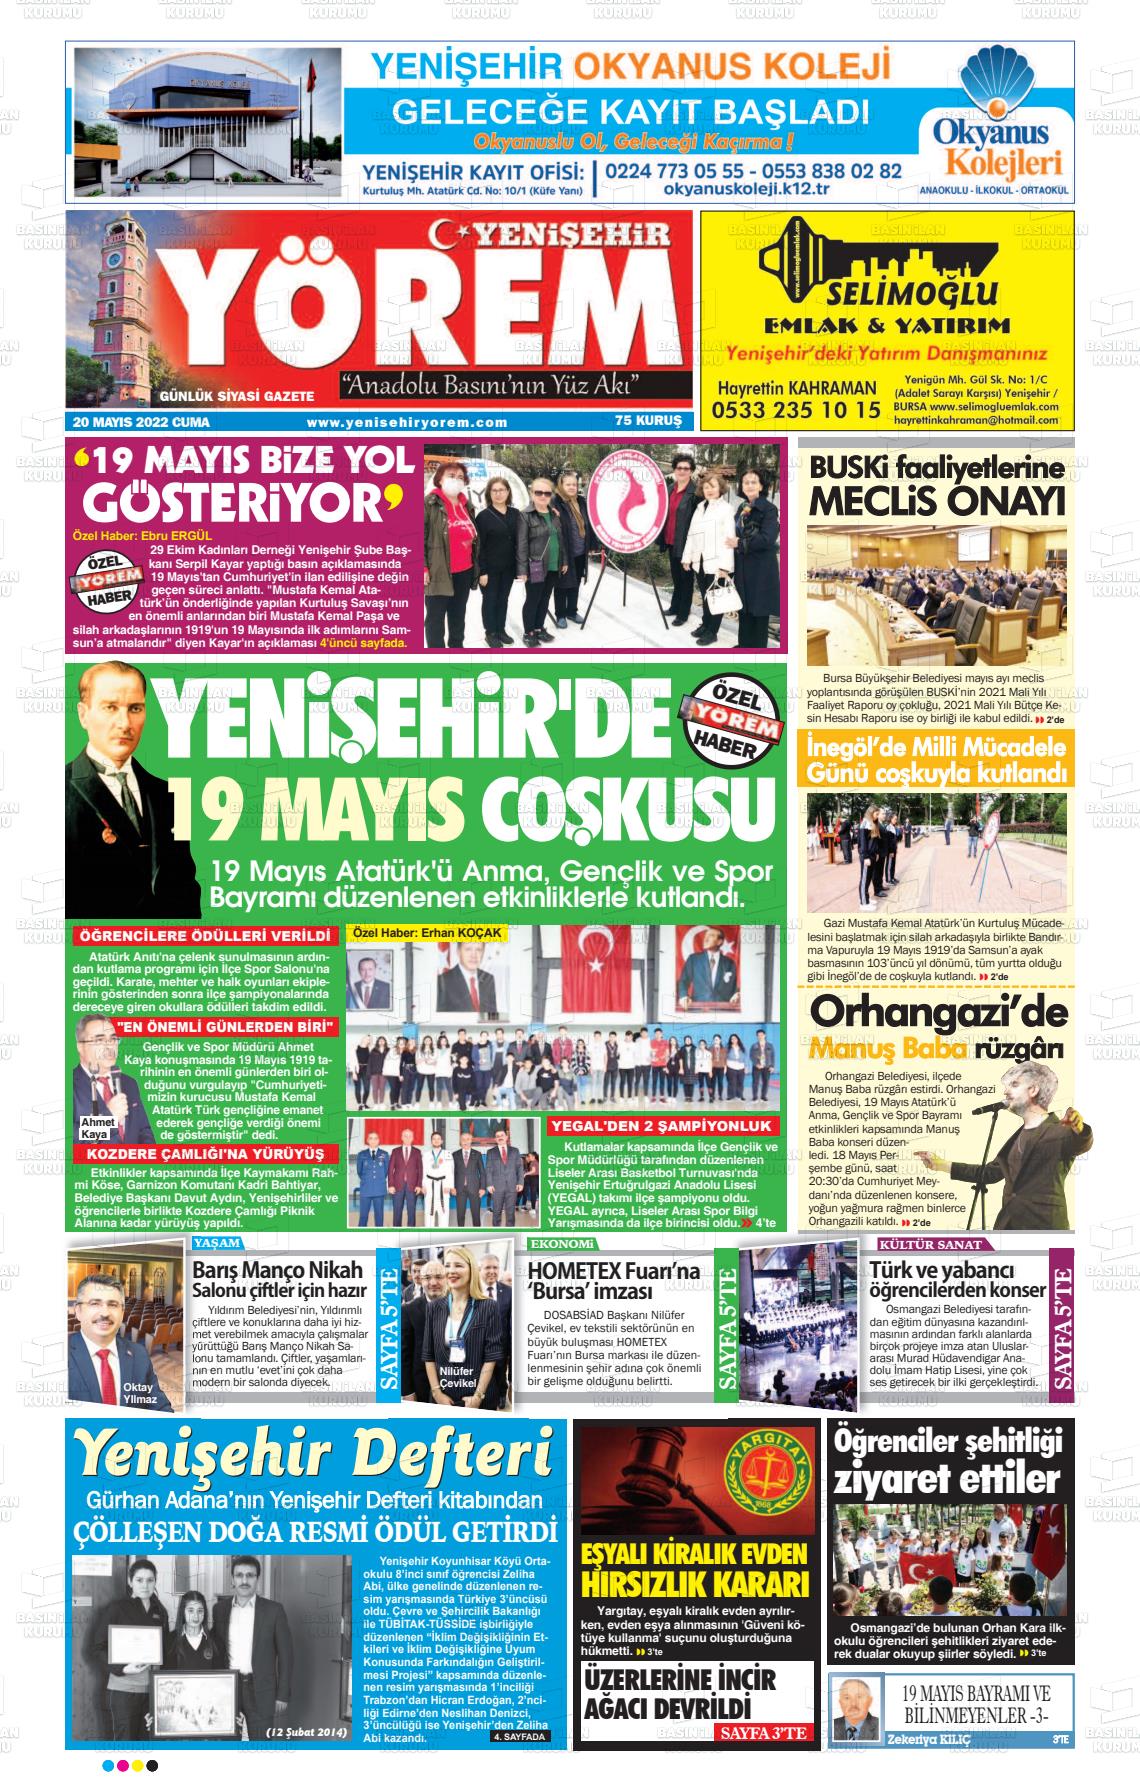 20 Mayıs 2022 Yenişehir Yörem Gazete Manşeti